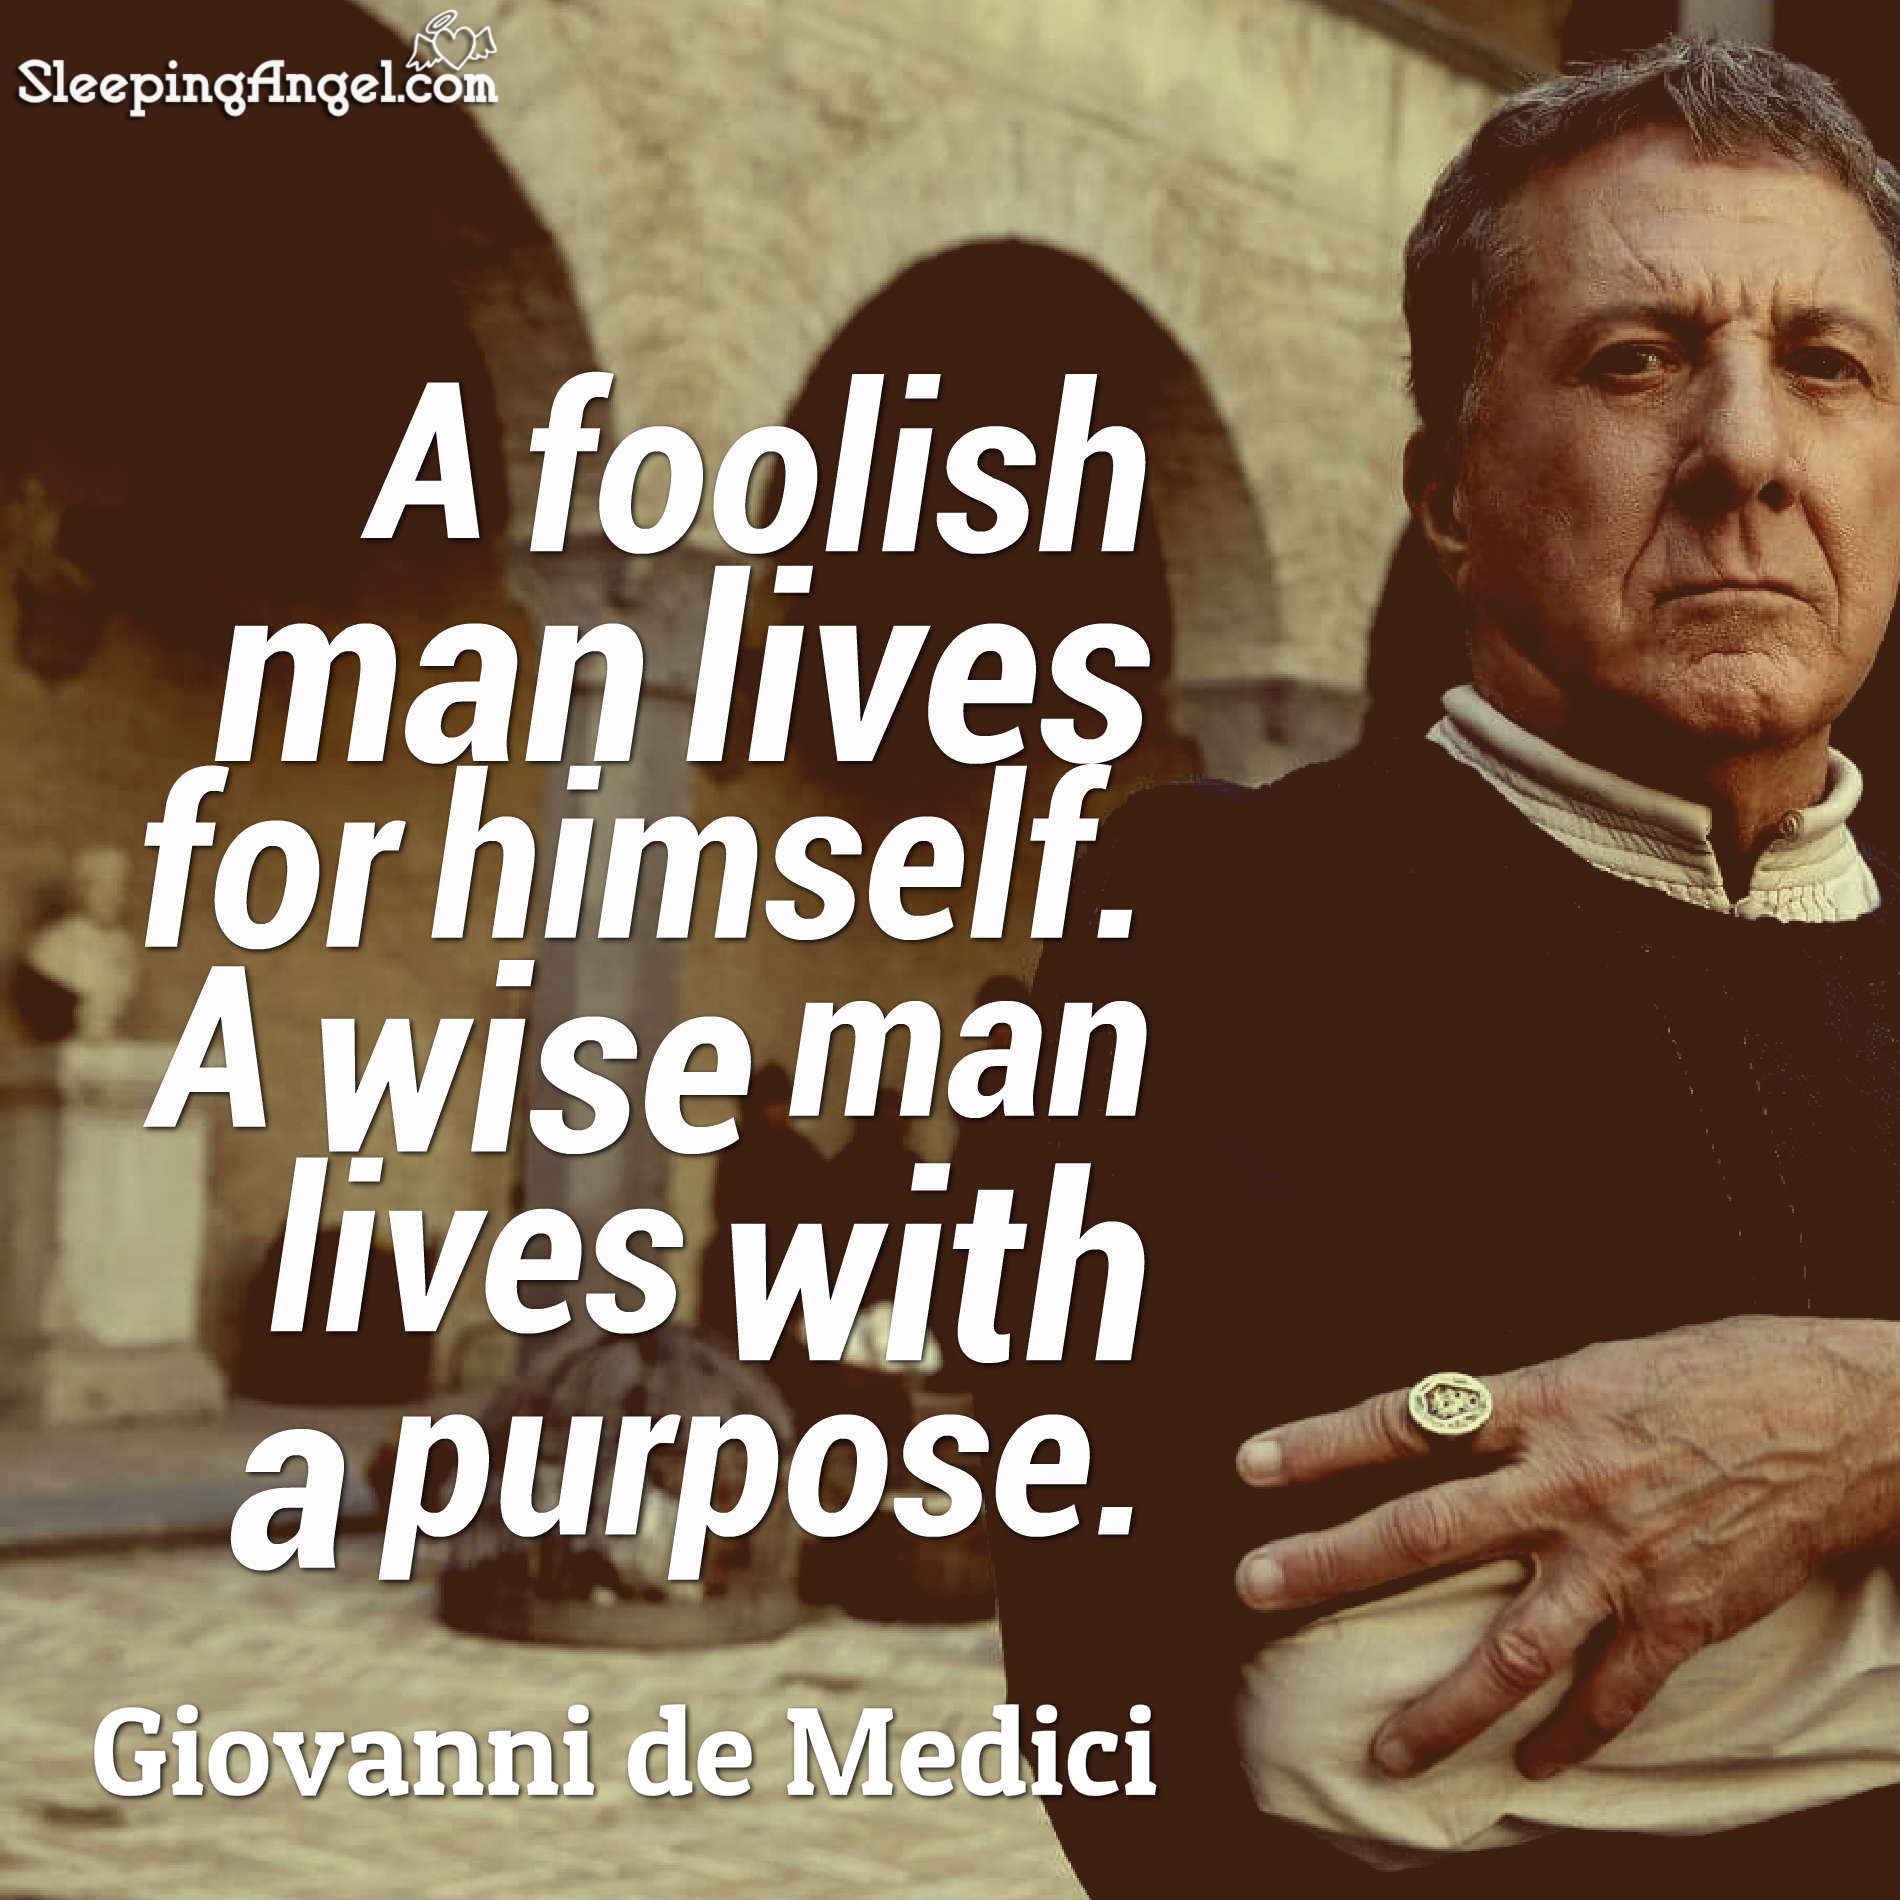 Giovanni de Medici Quote